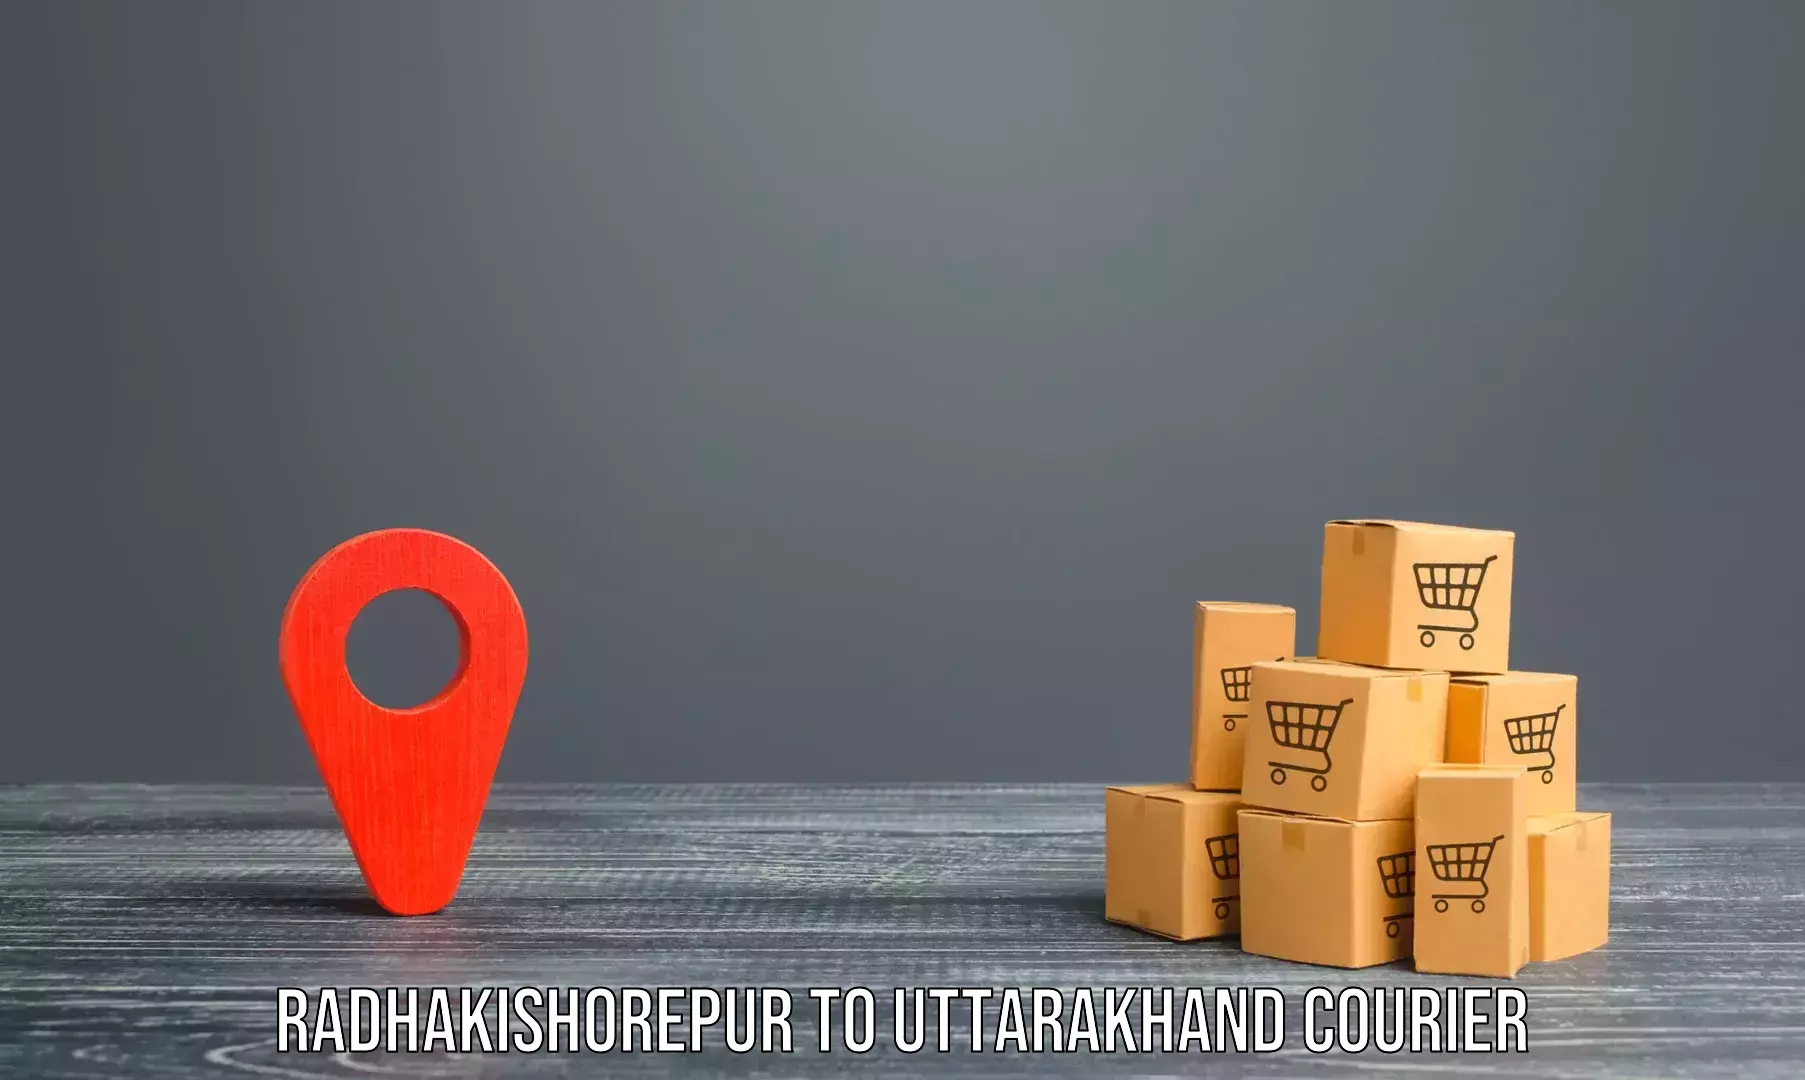 Furniture moving experts in Radhakishorepur to Uttarakhand